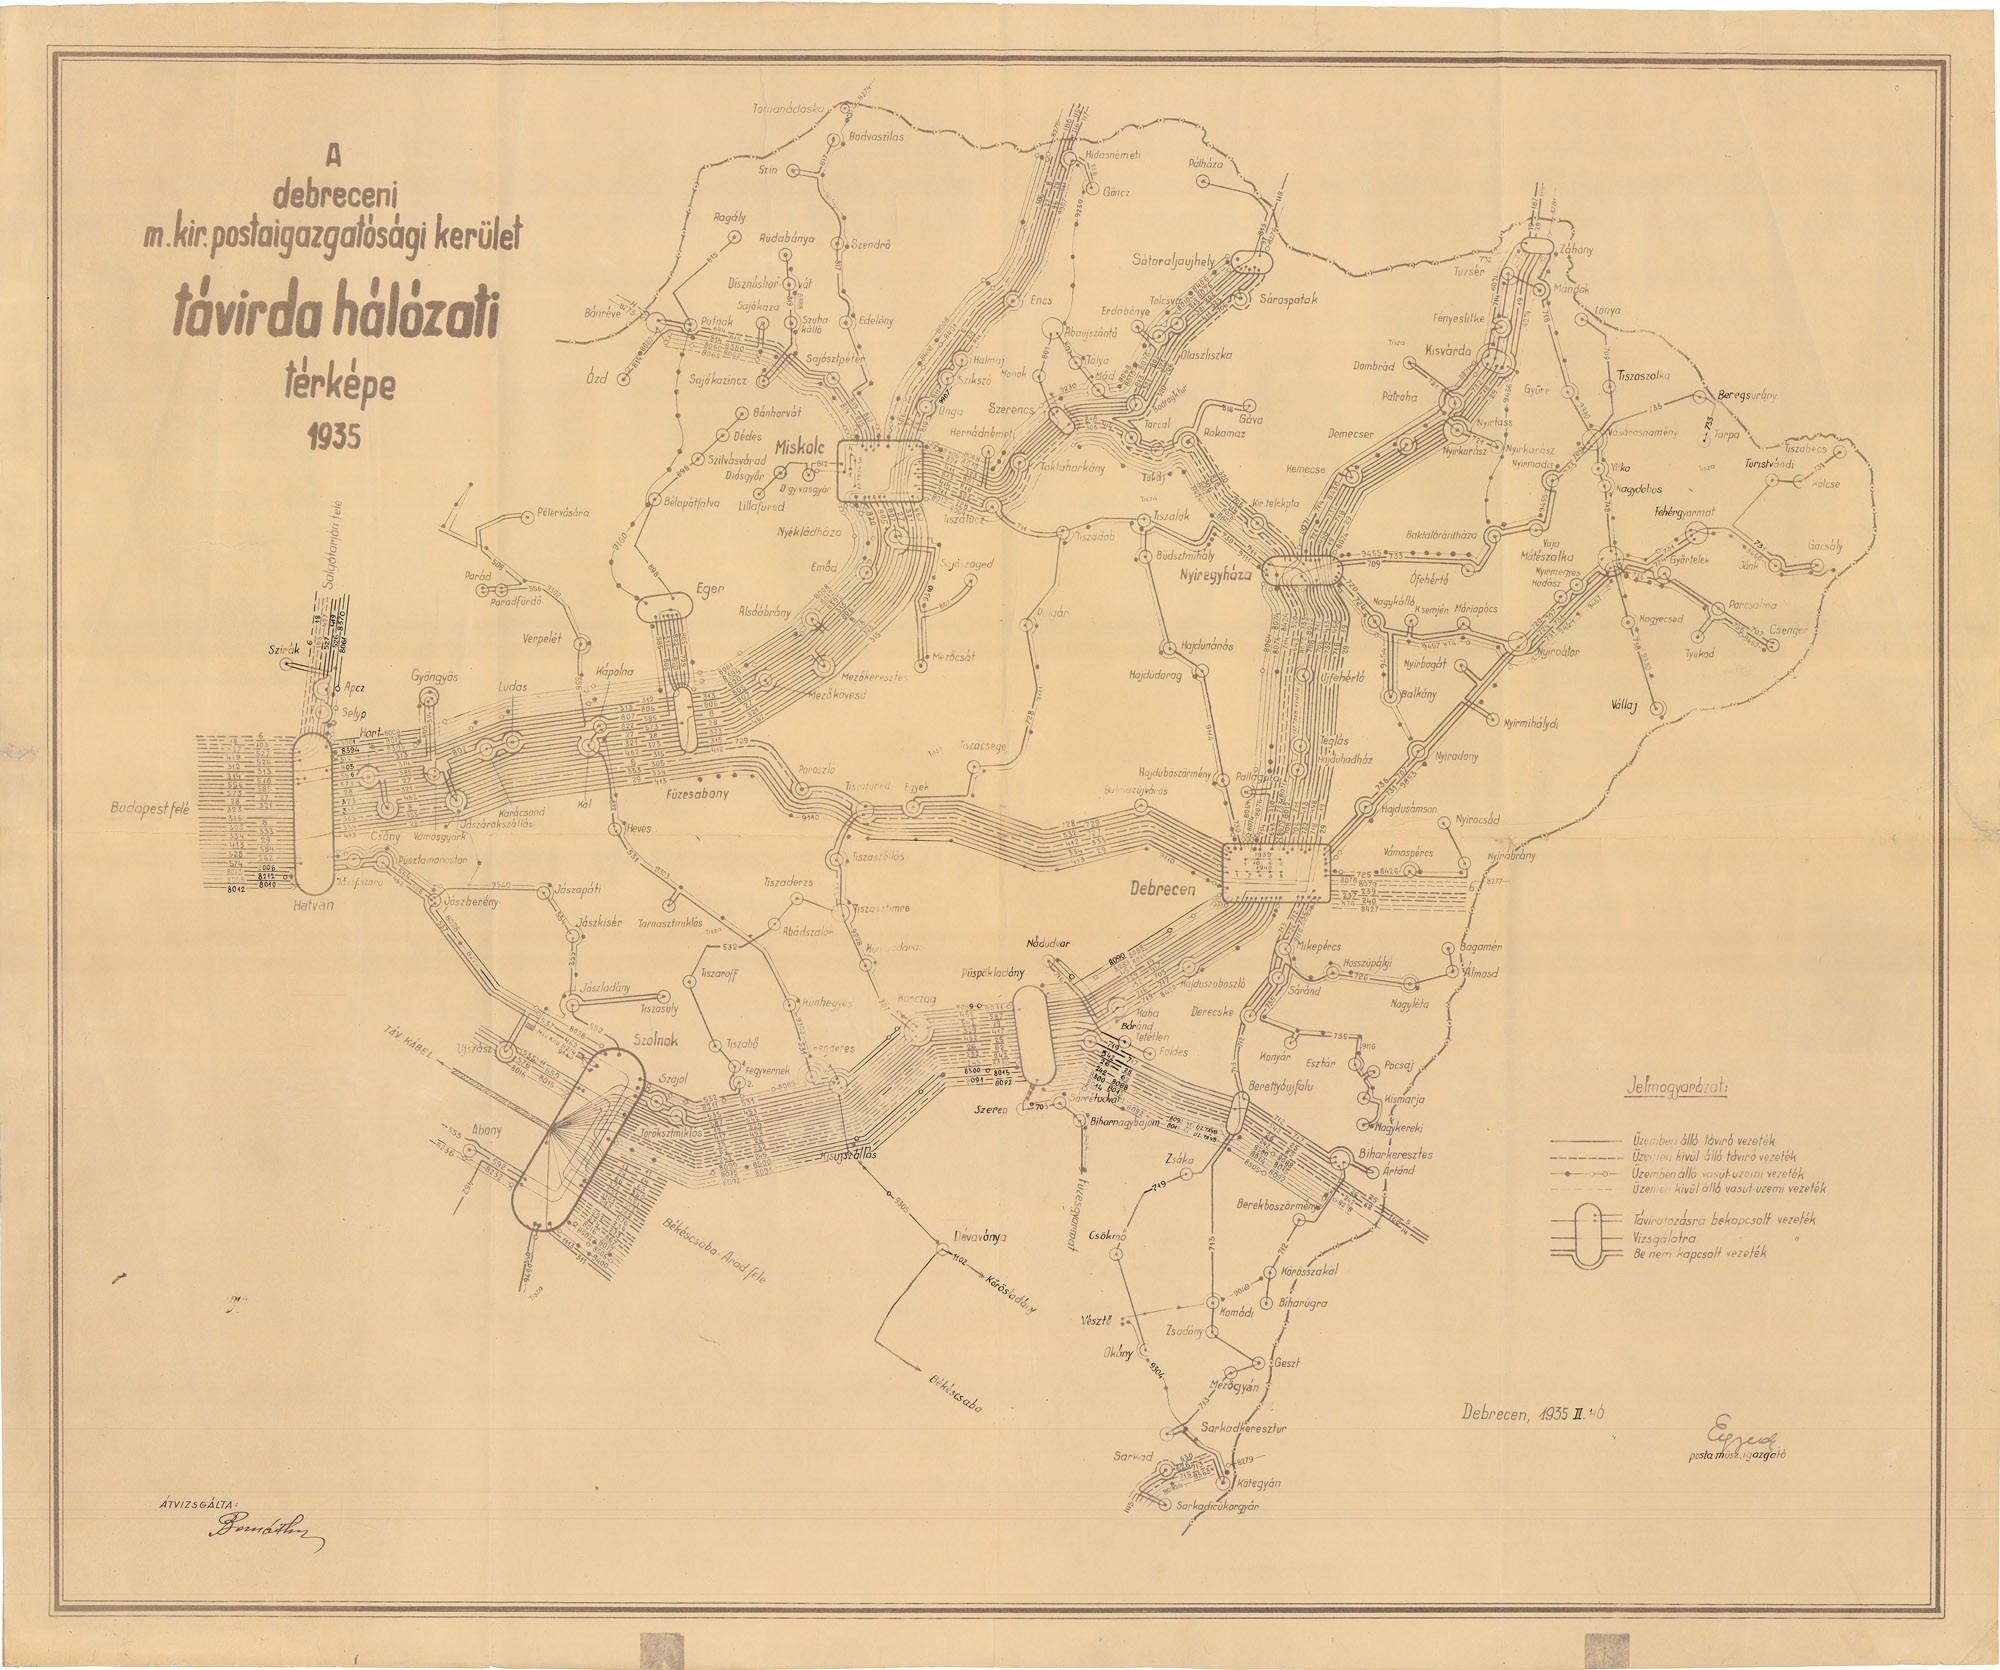 A debreceni m. kir. postaigazgatósági kerület távírdahálózati térképe, 1935 (Postamúzeum CC BY-NC-SA)